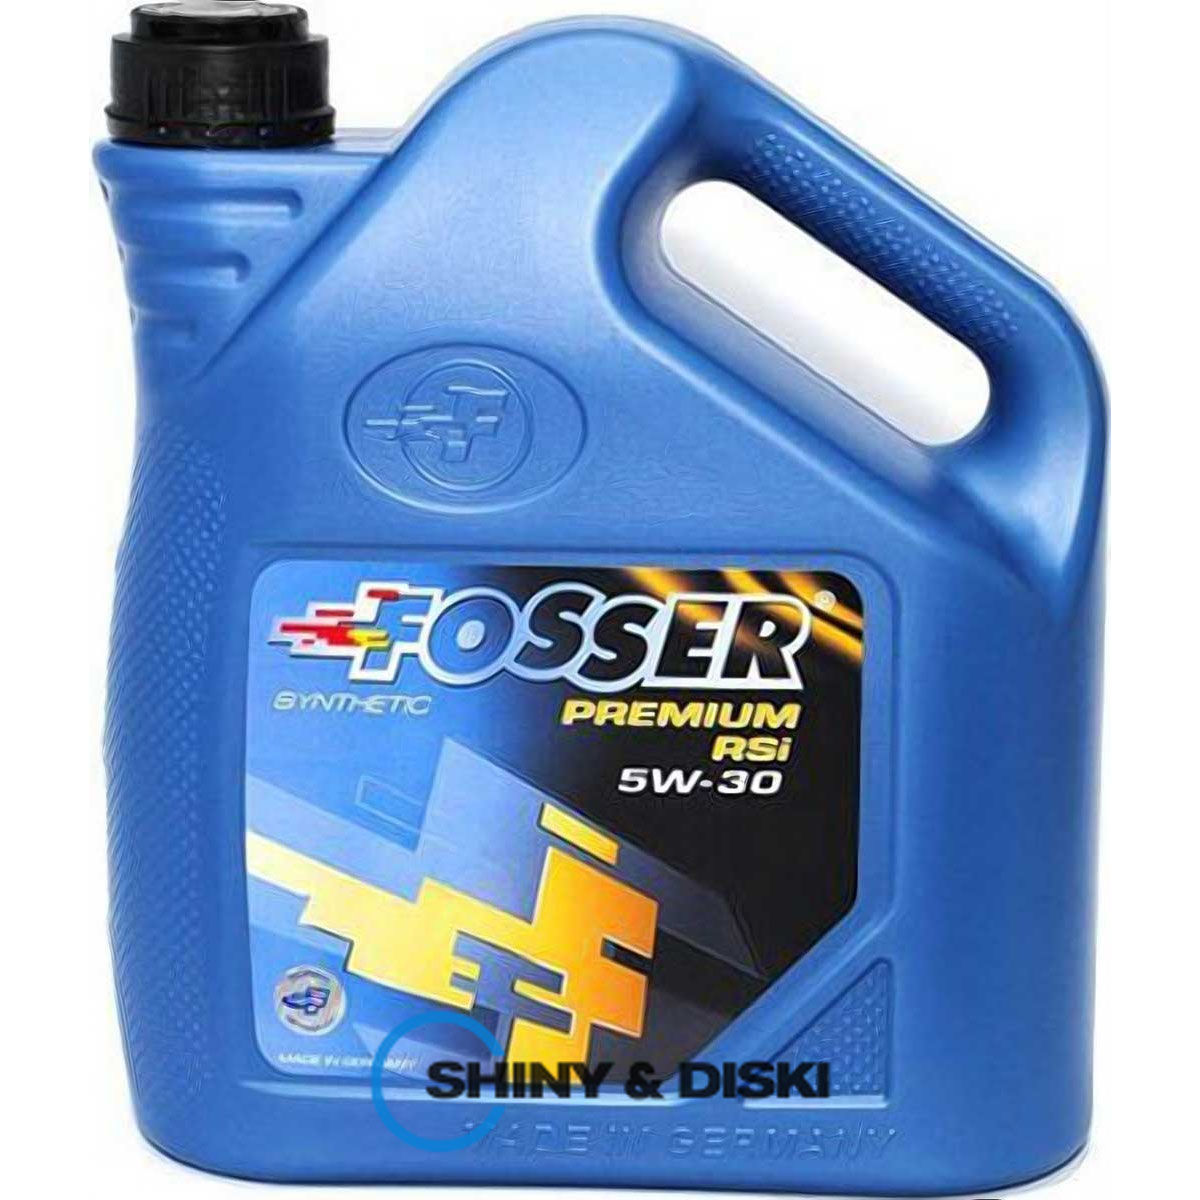 fosser premium rsi 5w-30 (4л)